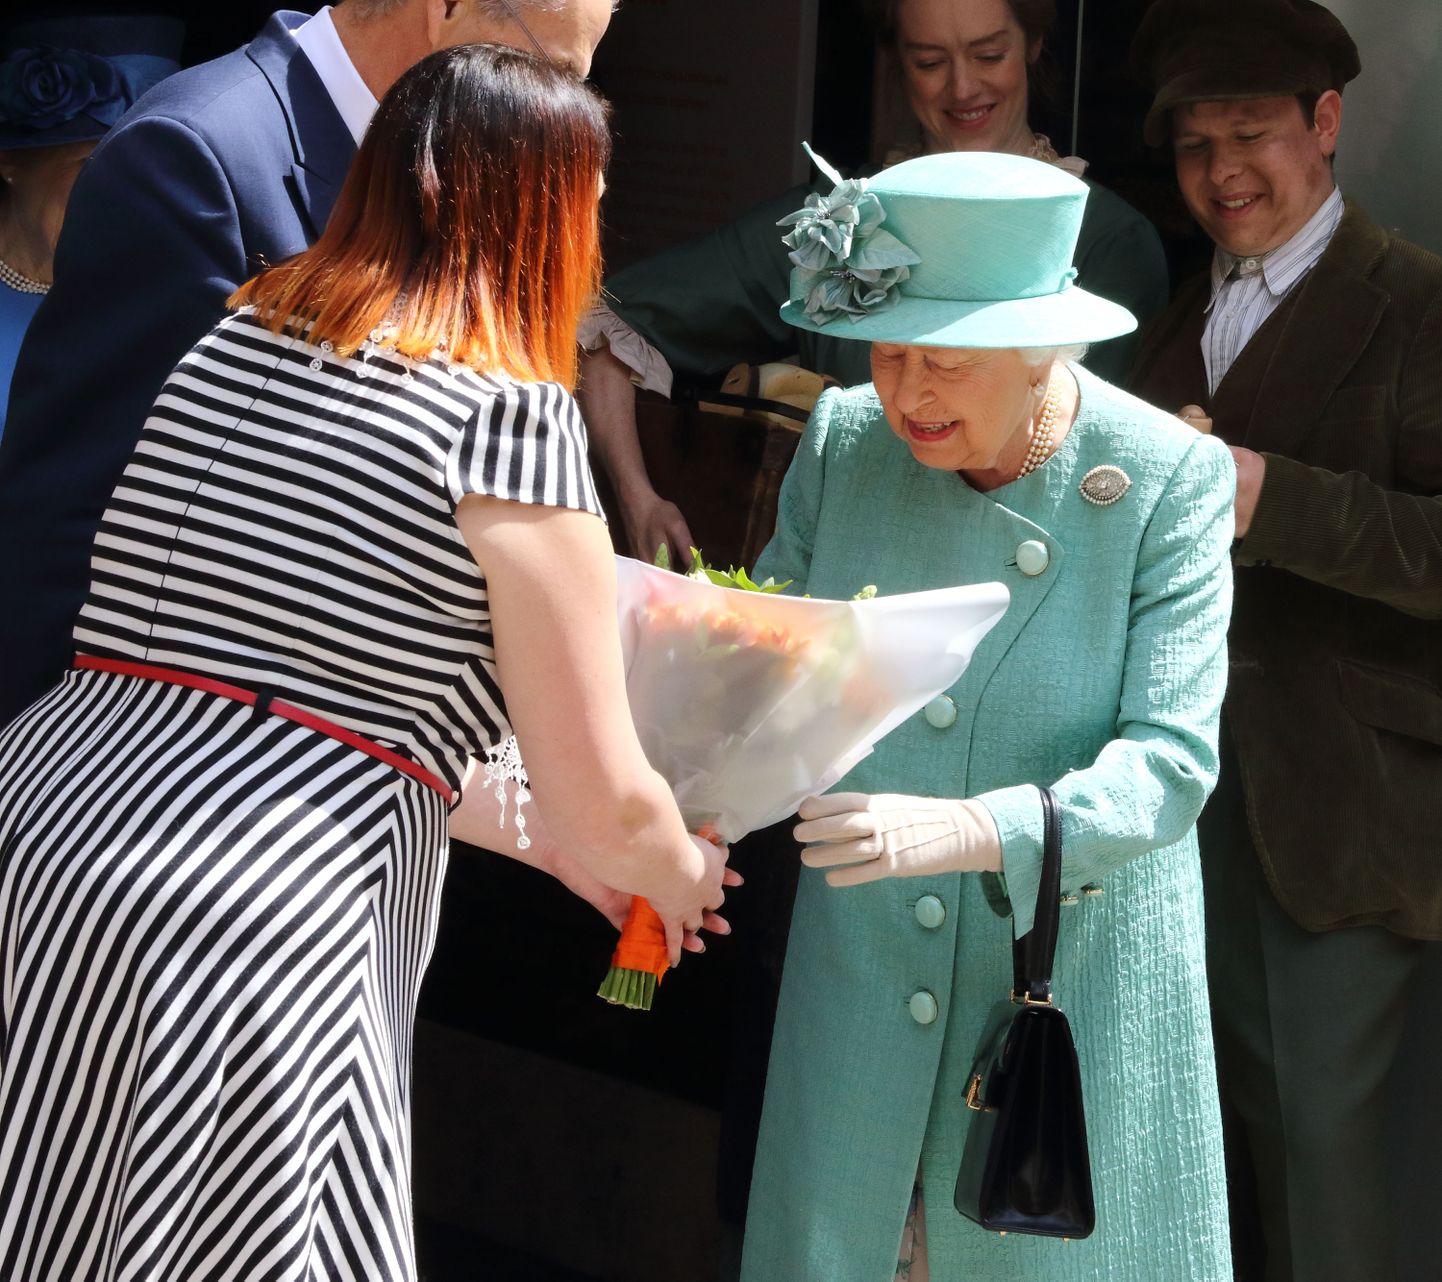 Kuninganna Elizabeth II käevangus on peaaegu alati must käekott